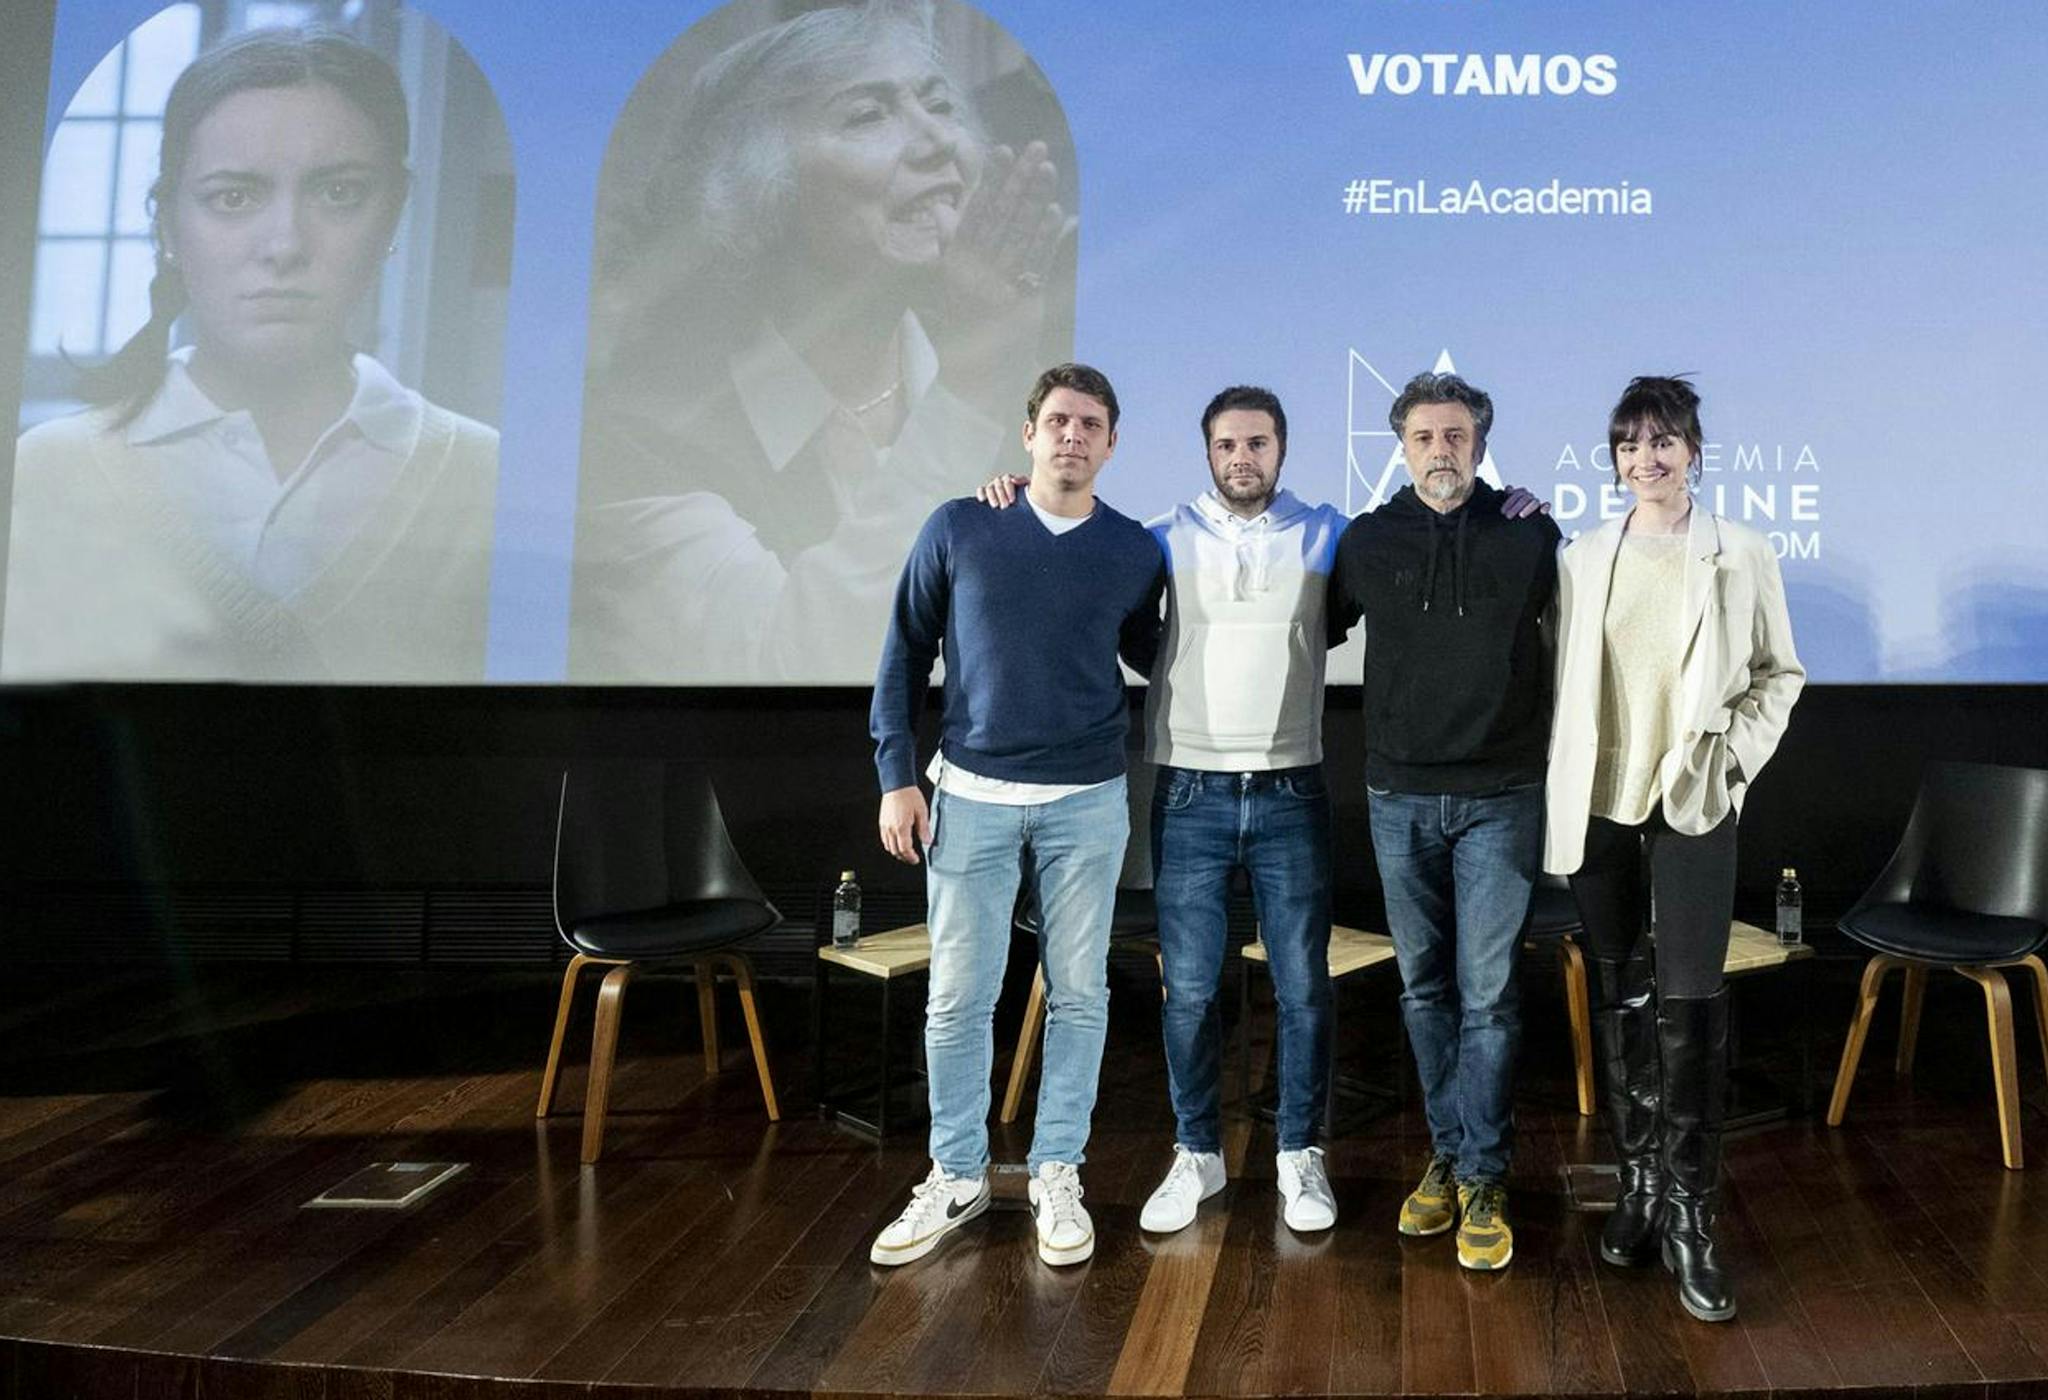 La Academia reunió a los cuatro cortometrajistas españoles que aspiraban al Oscar